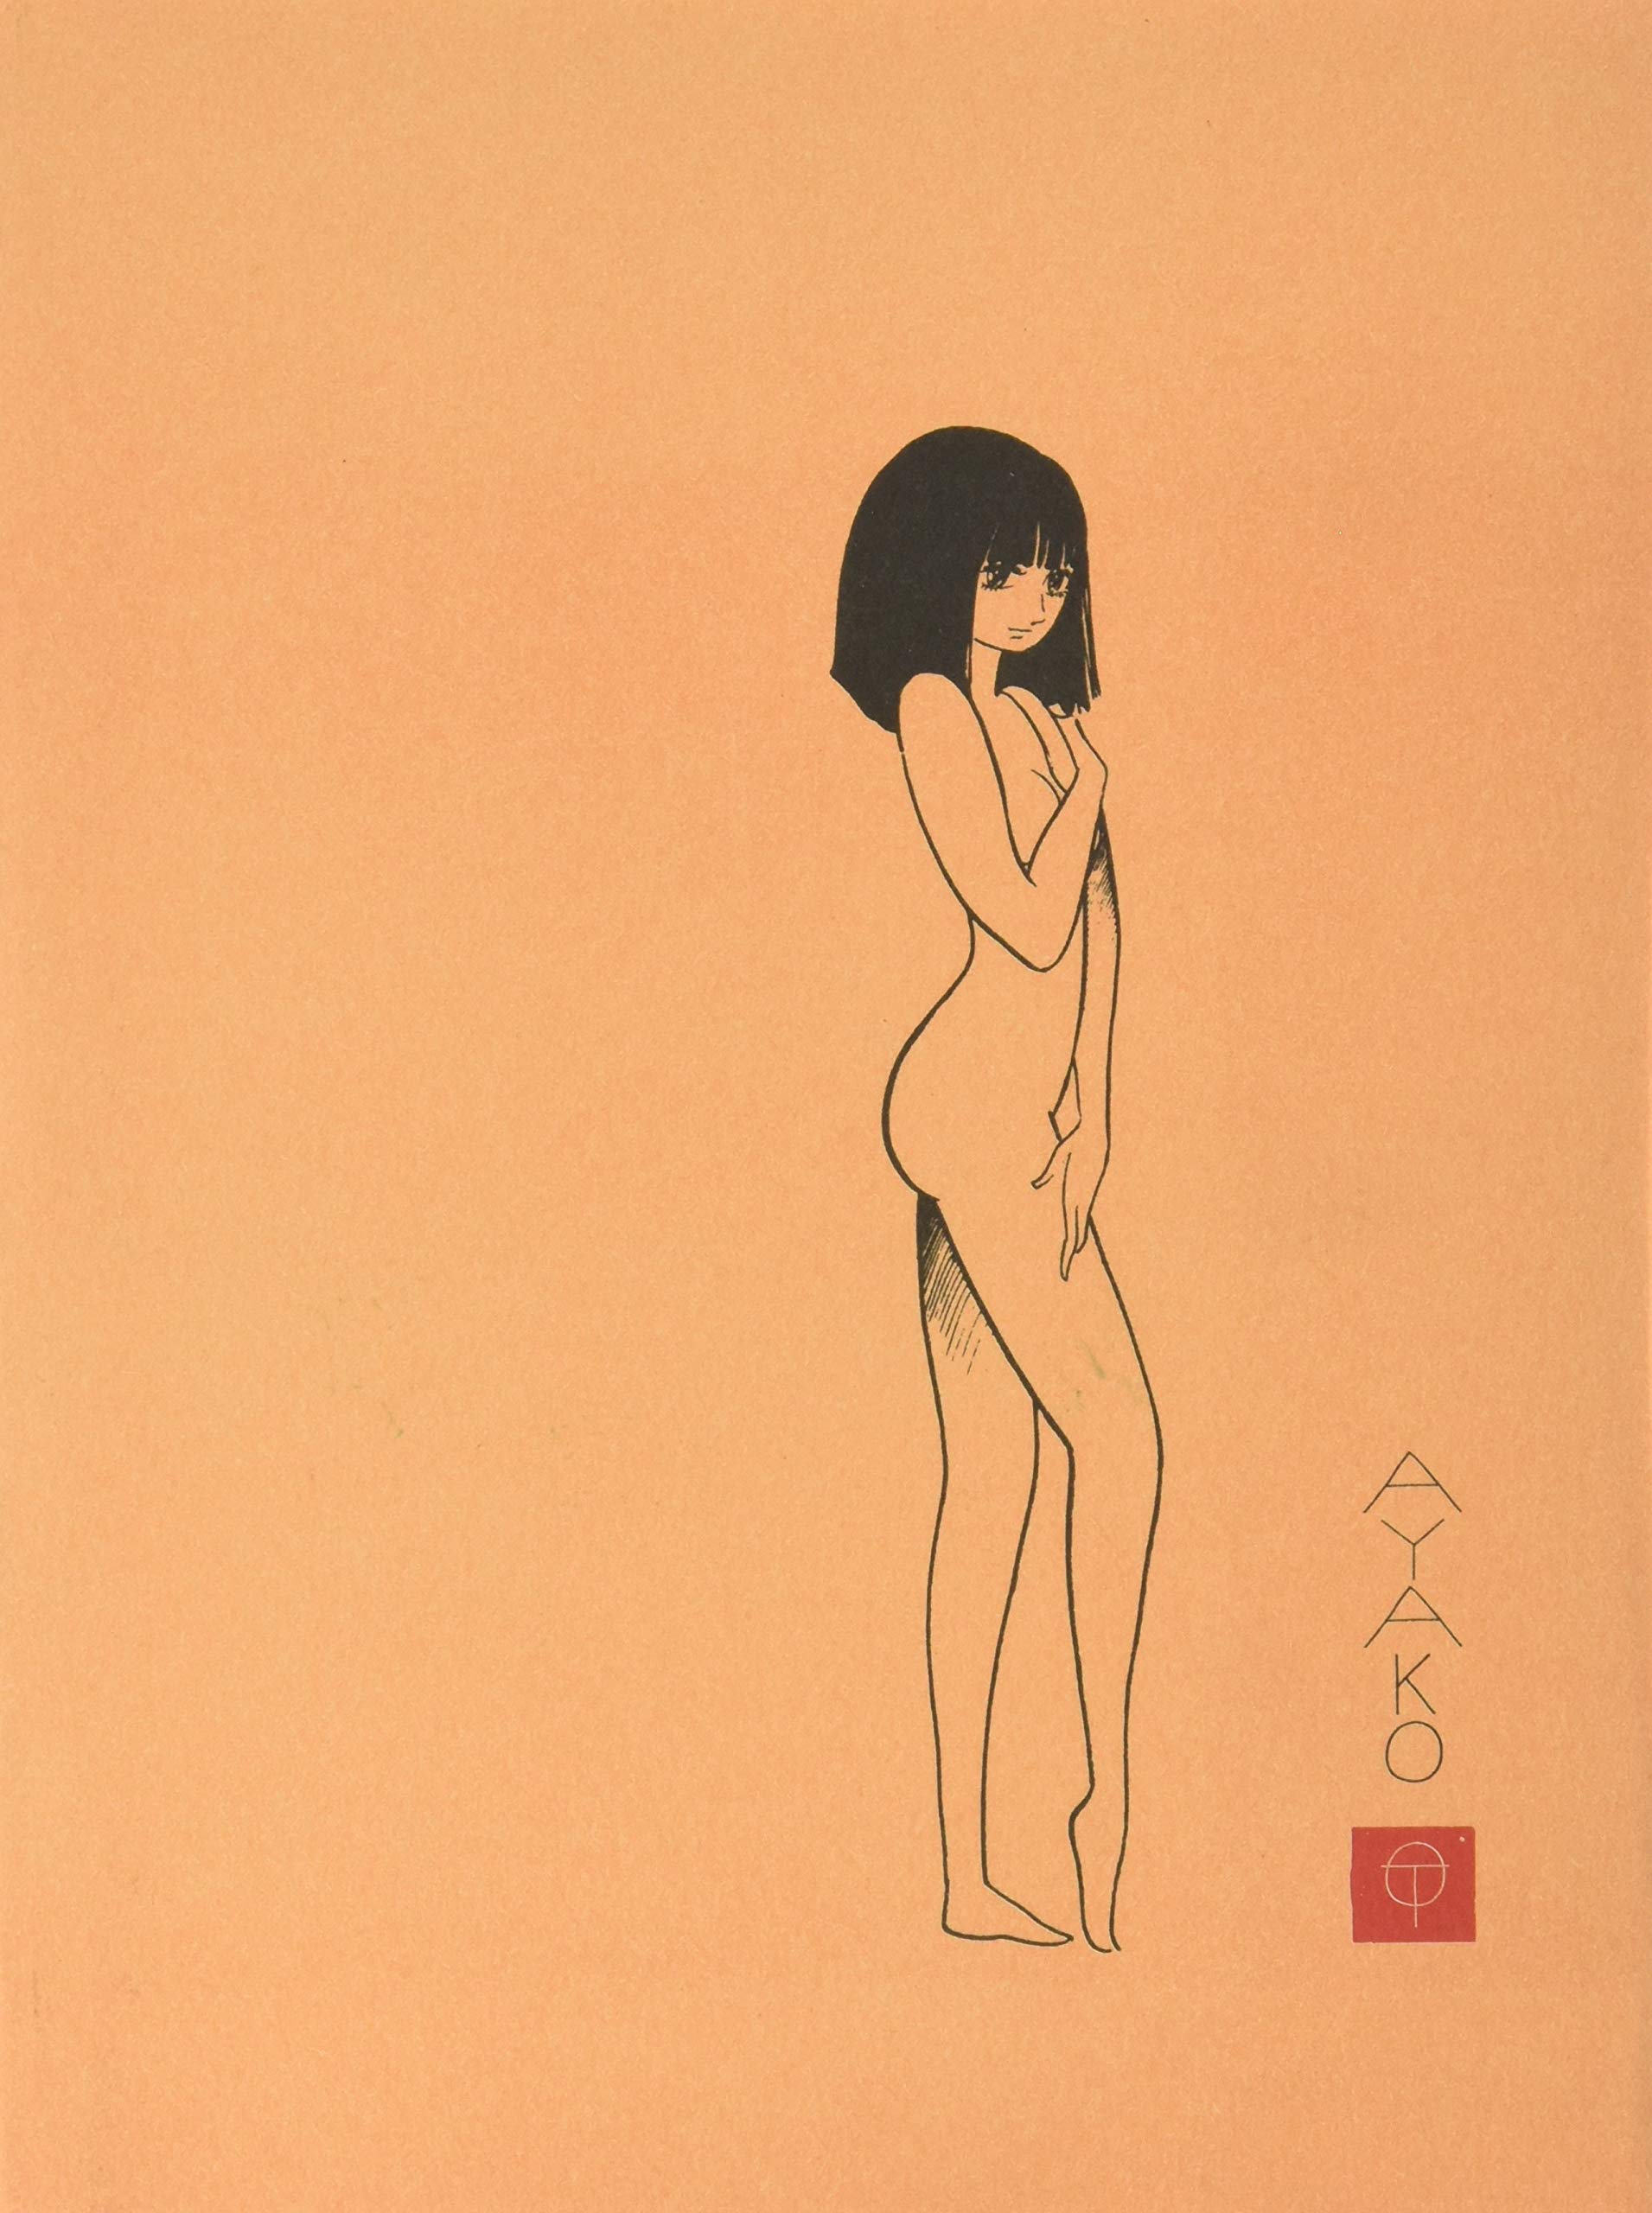 Ayako (2010, Vertical)